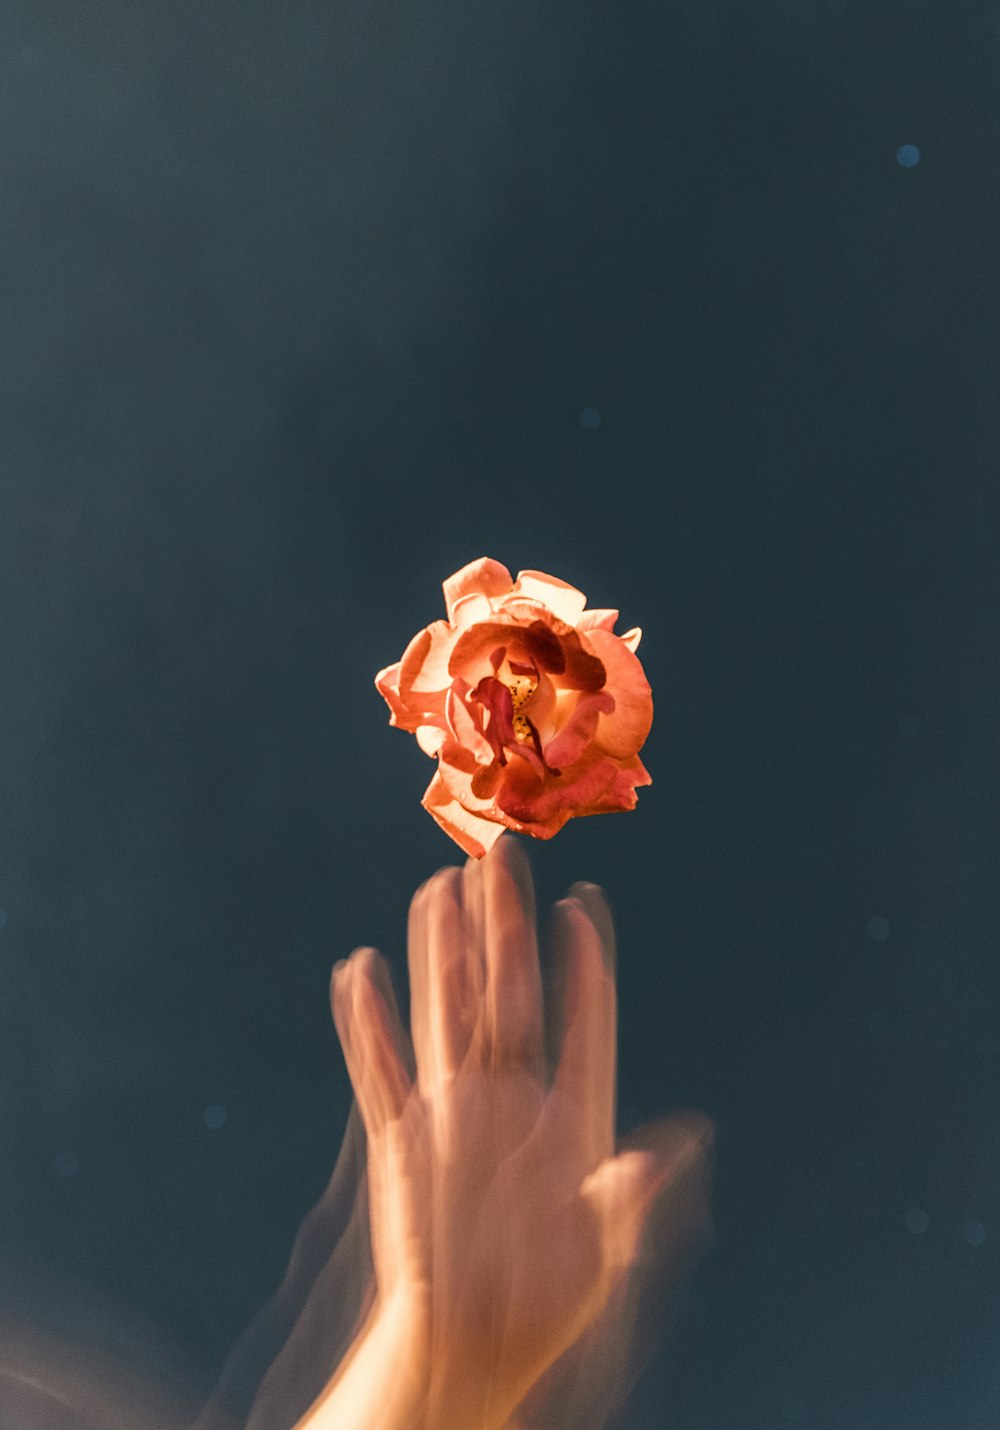 persona lanzando flor de rosa naranja